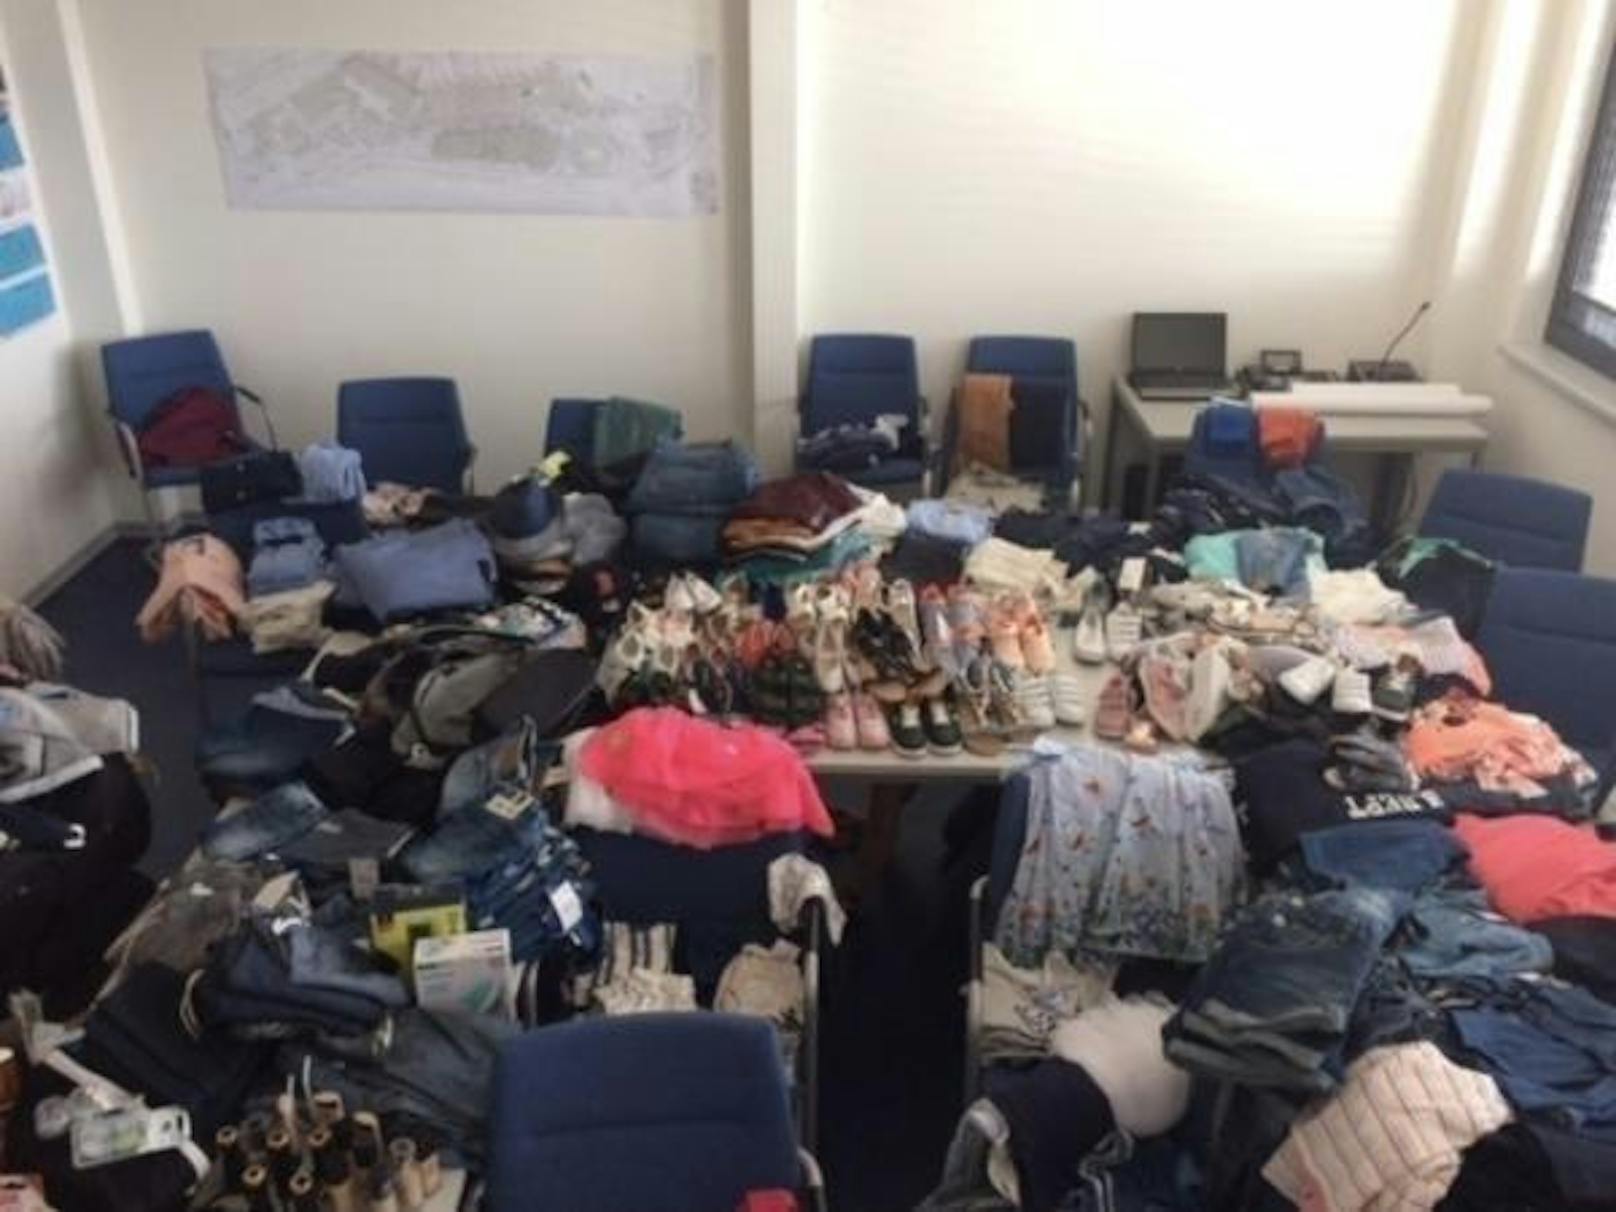 Die Polizei hat am 3. Mai 2018 am Flughafen Hamburg einen 33-jährigen Algerier verhaftet, der wegen Ladendiebstahl in 13 Fällen zur Festnahme ausgeschrieben war. Der Passagier hatte zehn Gepäckstücke voller Diebesgut aufgegeben.